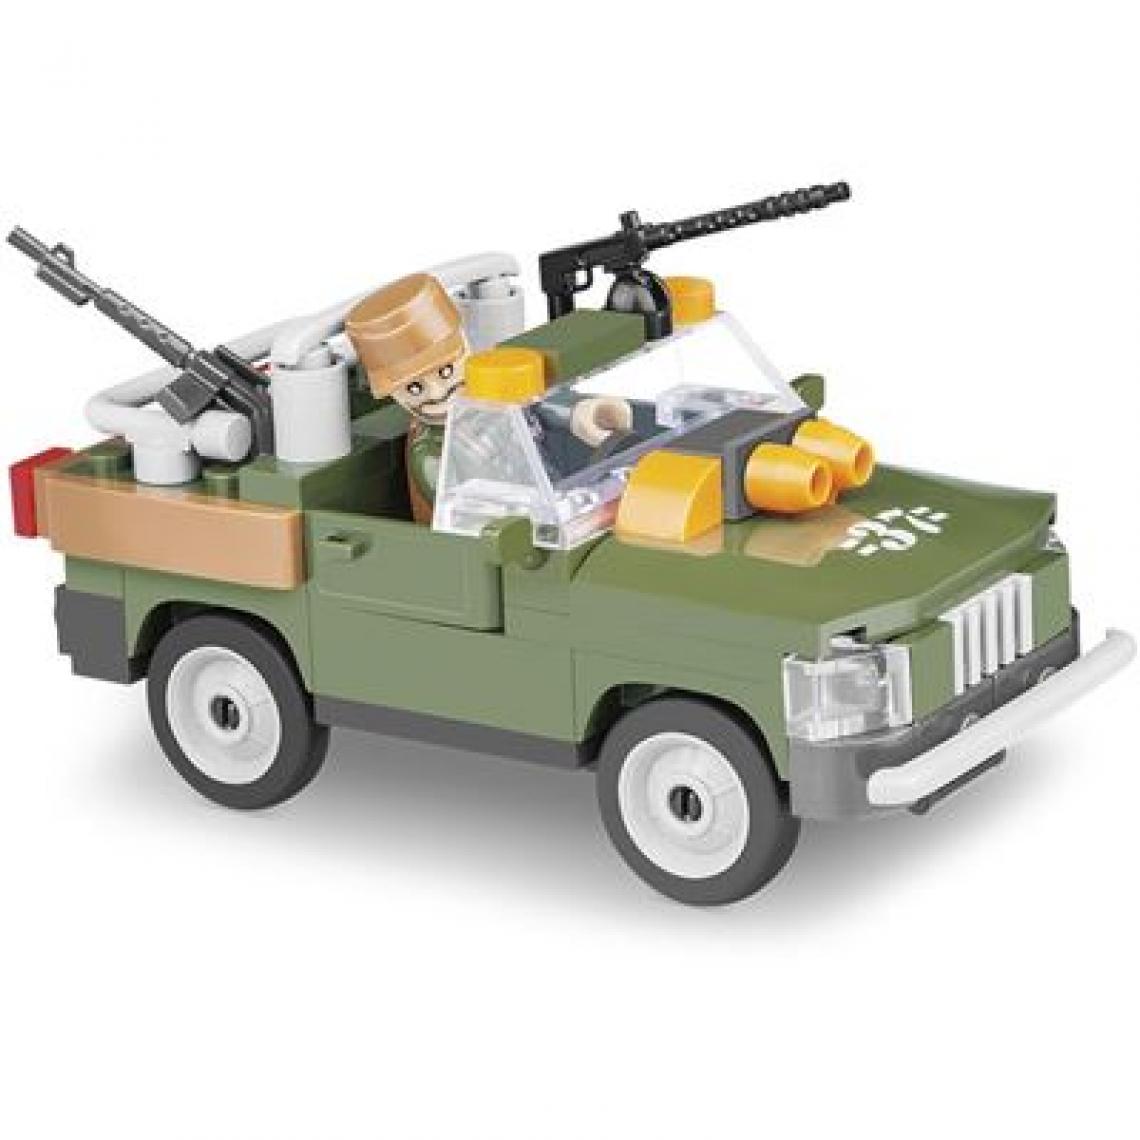 Cobi - Véhicule d'intervention rapide - 90 pièces - Briques Lego